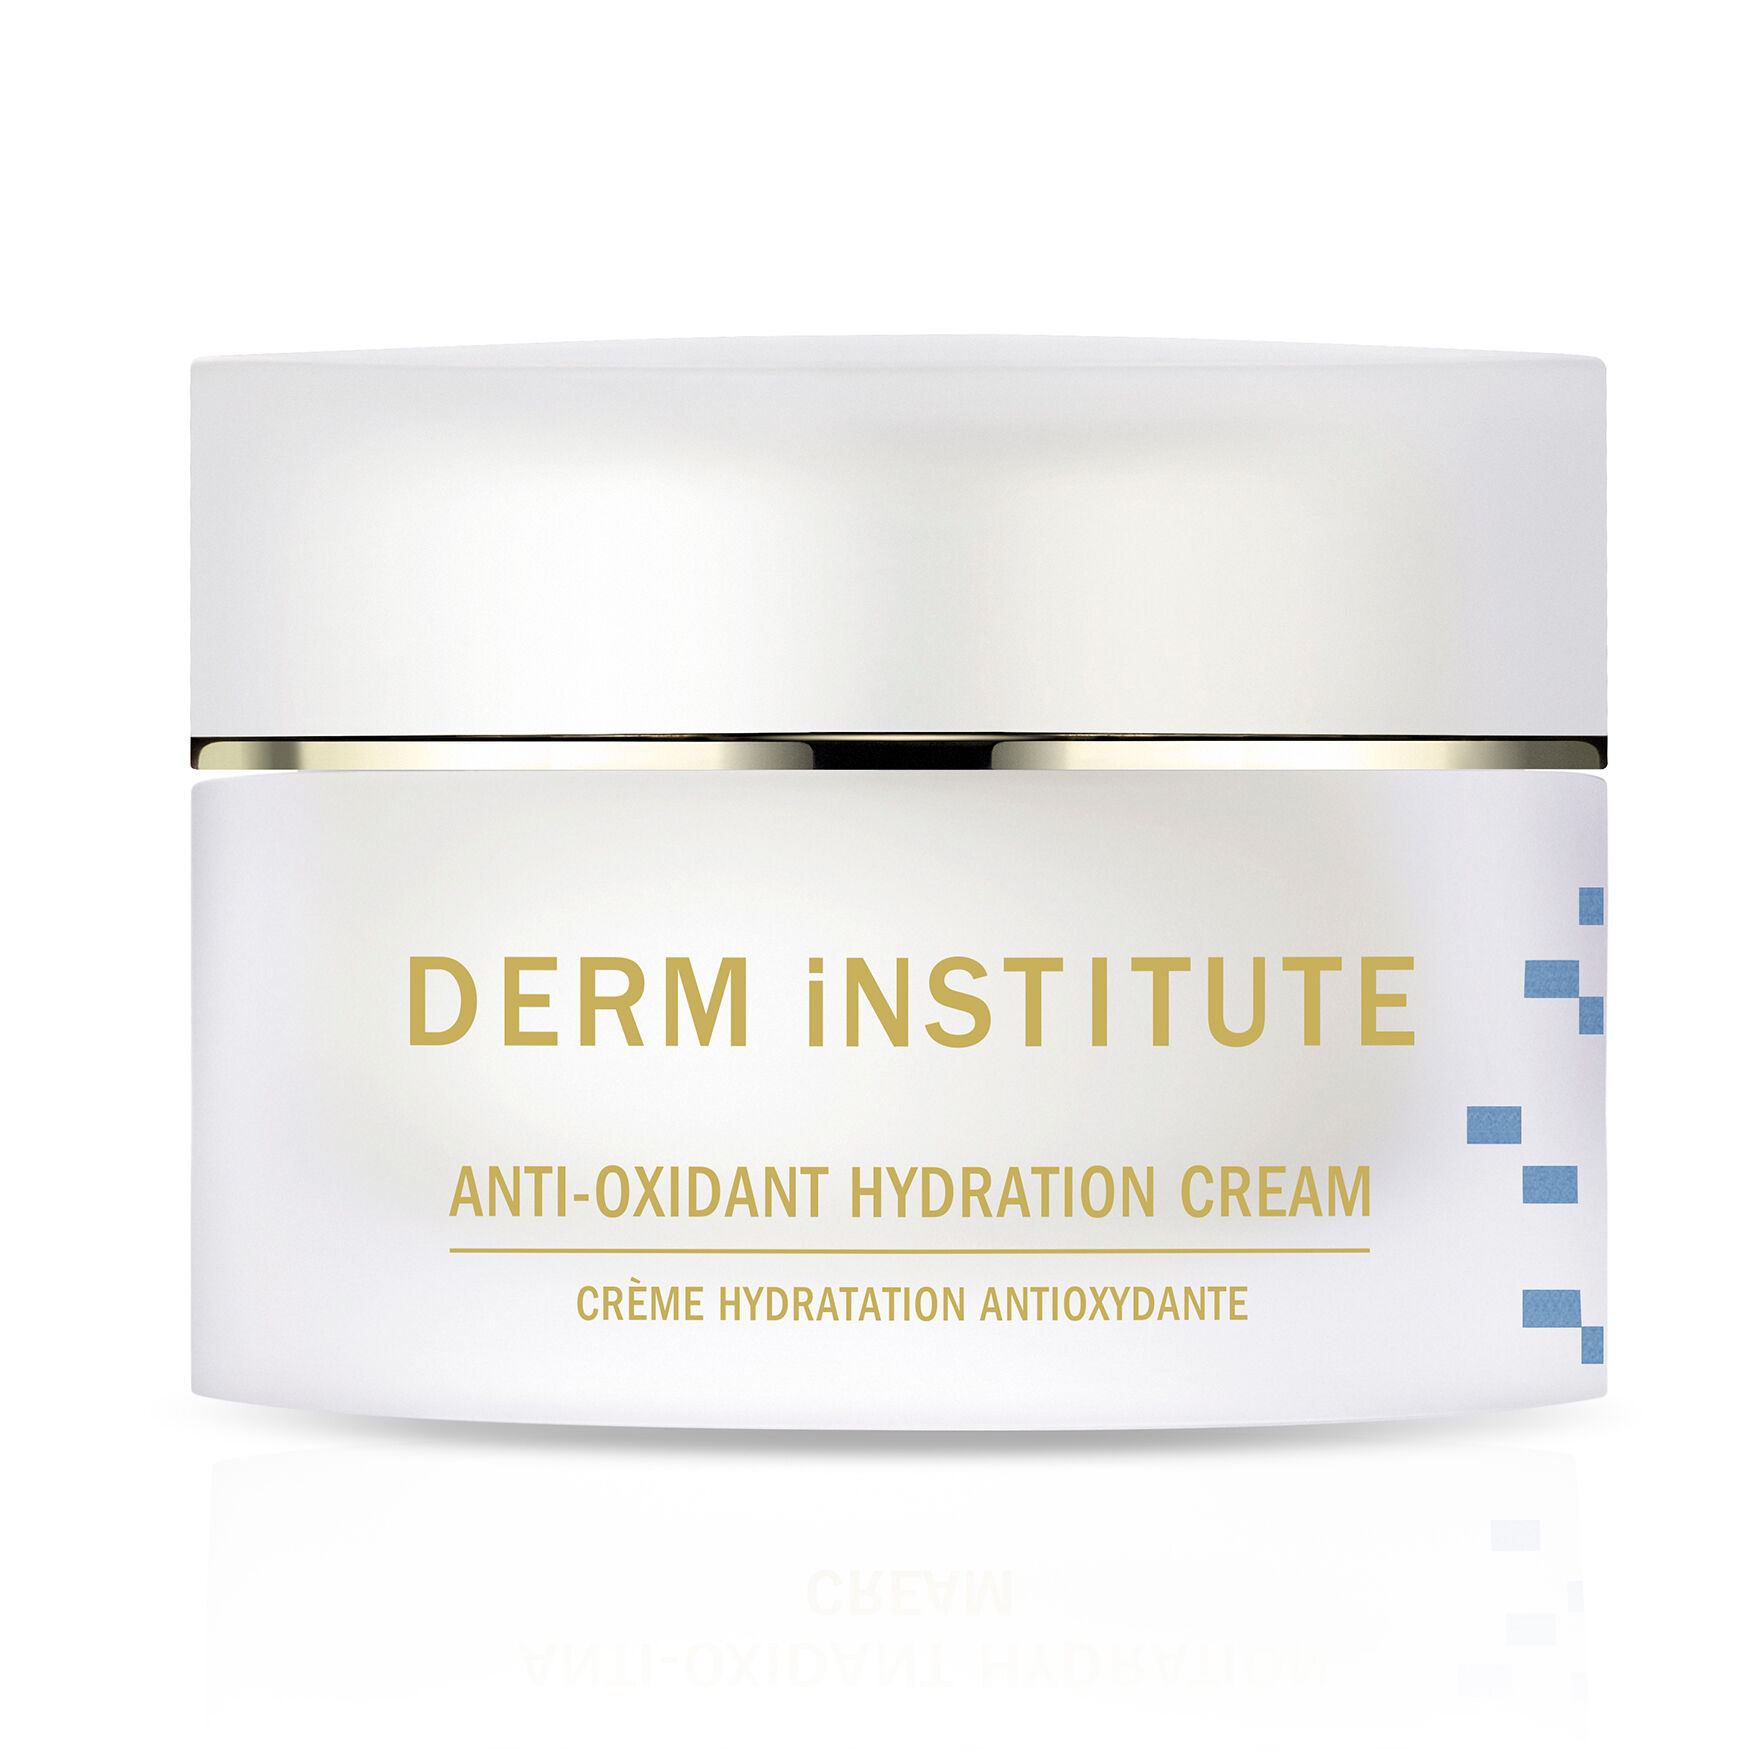 Derm Institute - Anti-Oxidant Hydration Cream